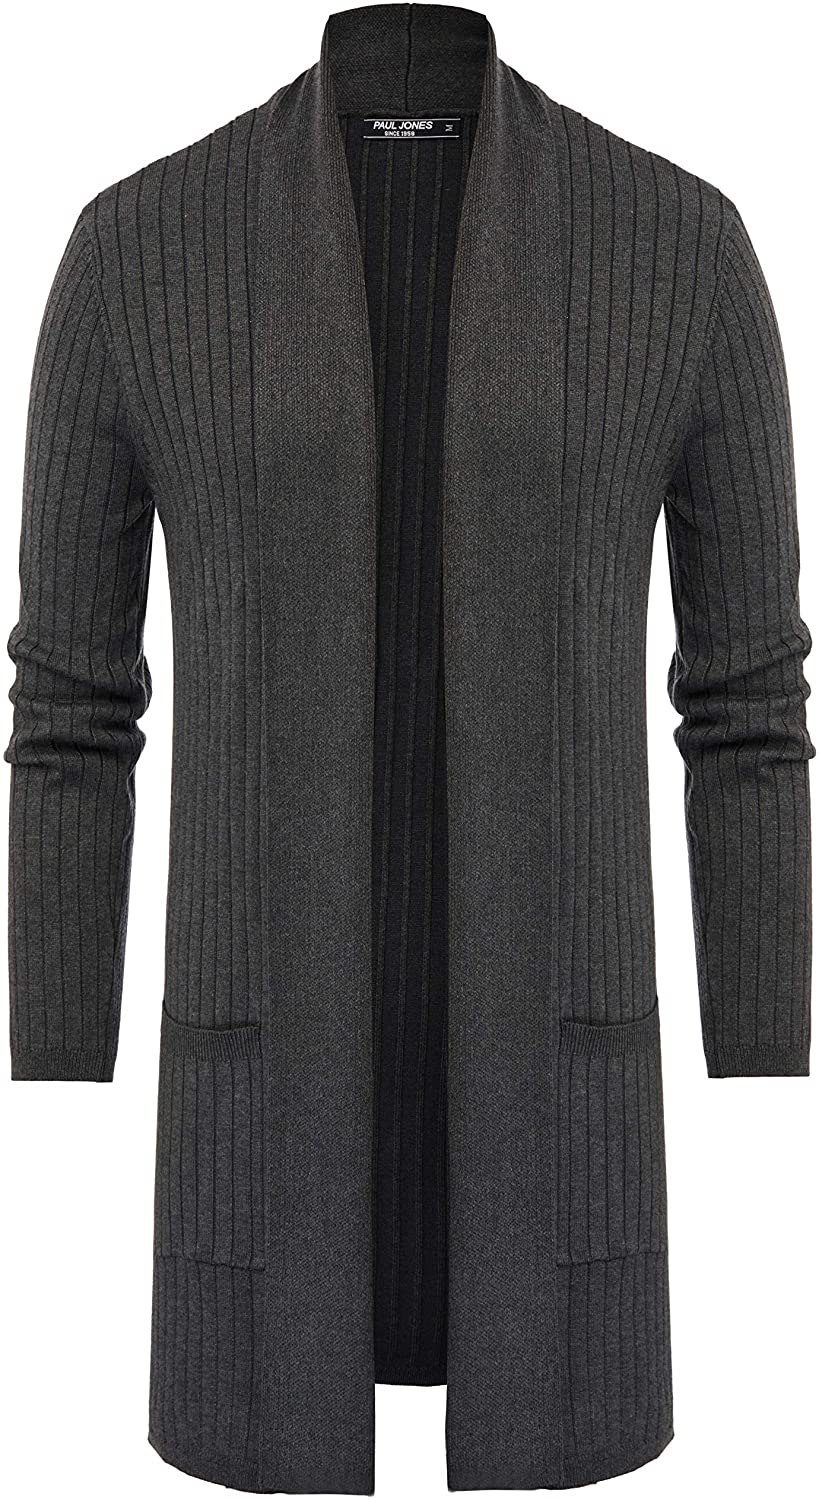 PAUL JONES Mens Long Sleeve Shawl Collar Open Front Long Cardigan Sweater 